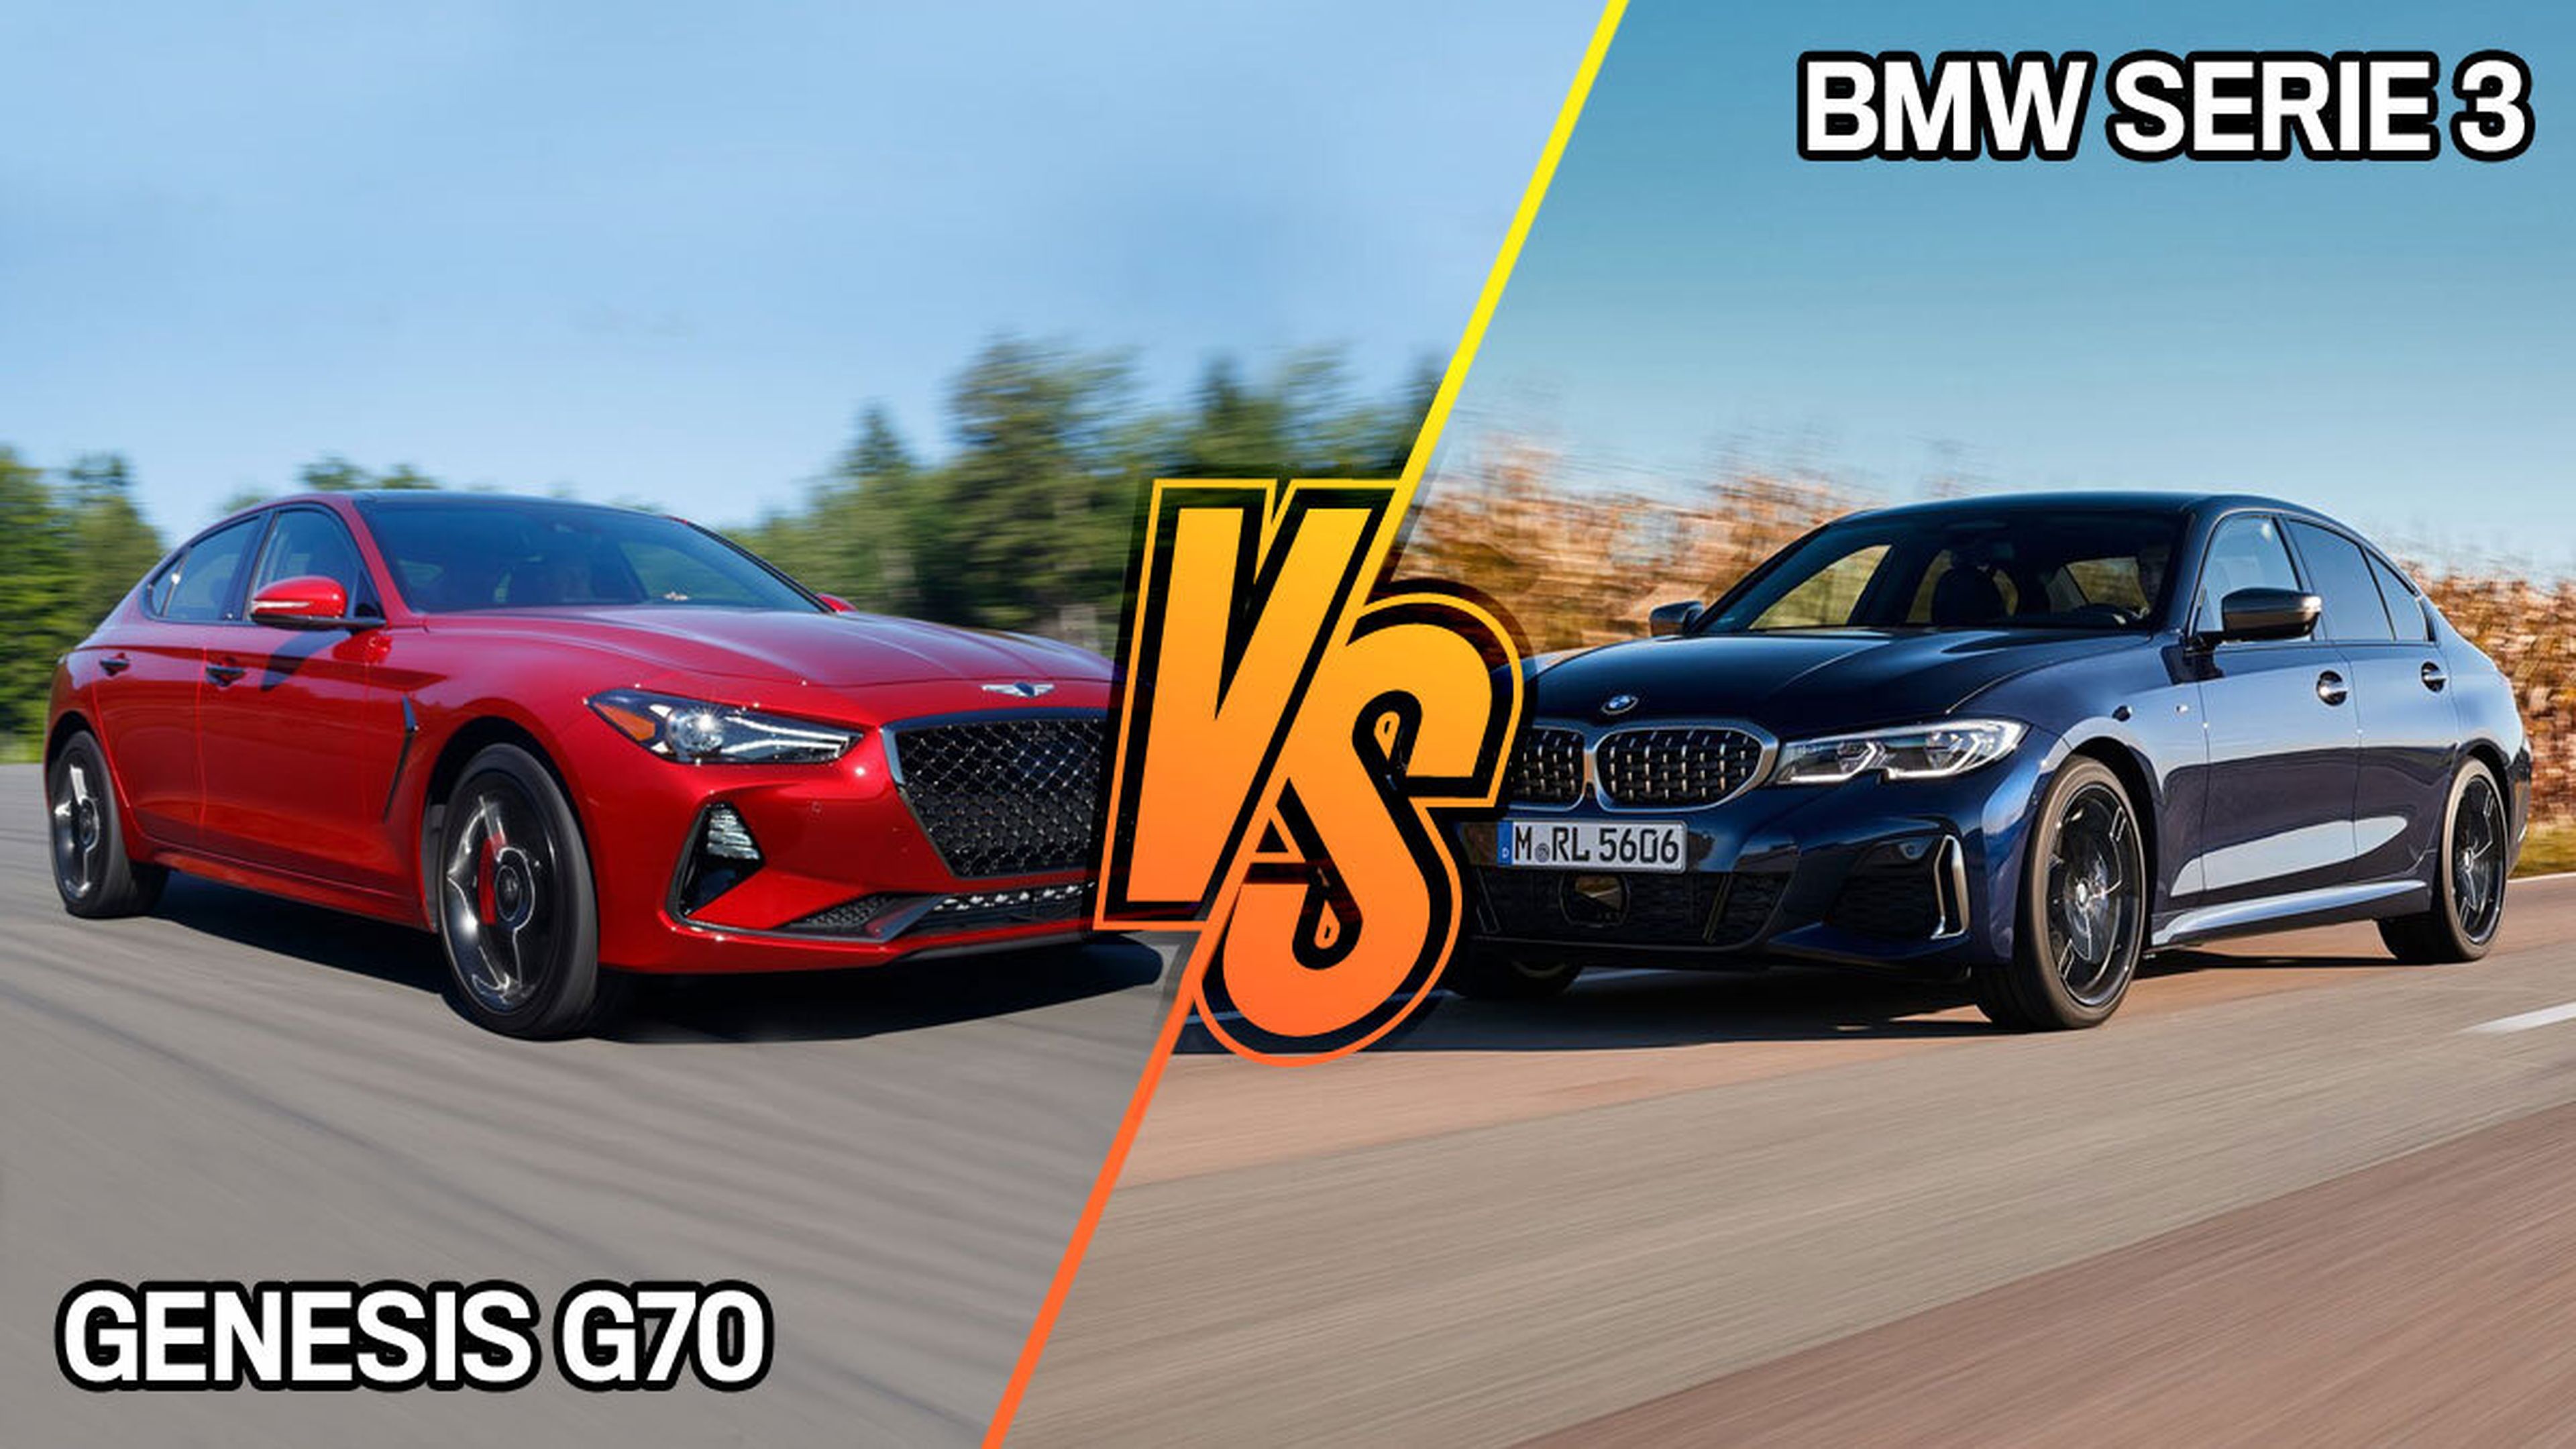 BMW Serie 3 o Genesis G70, ¿cuál es mejor?